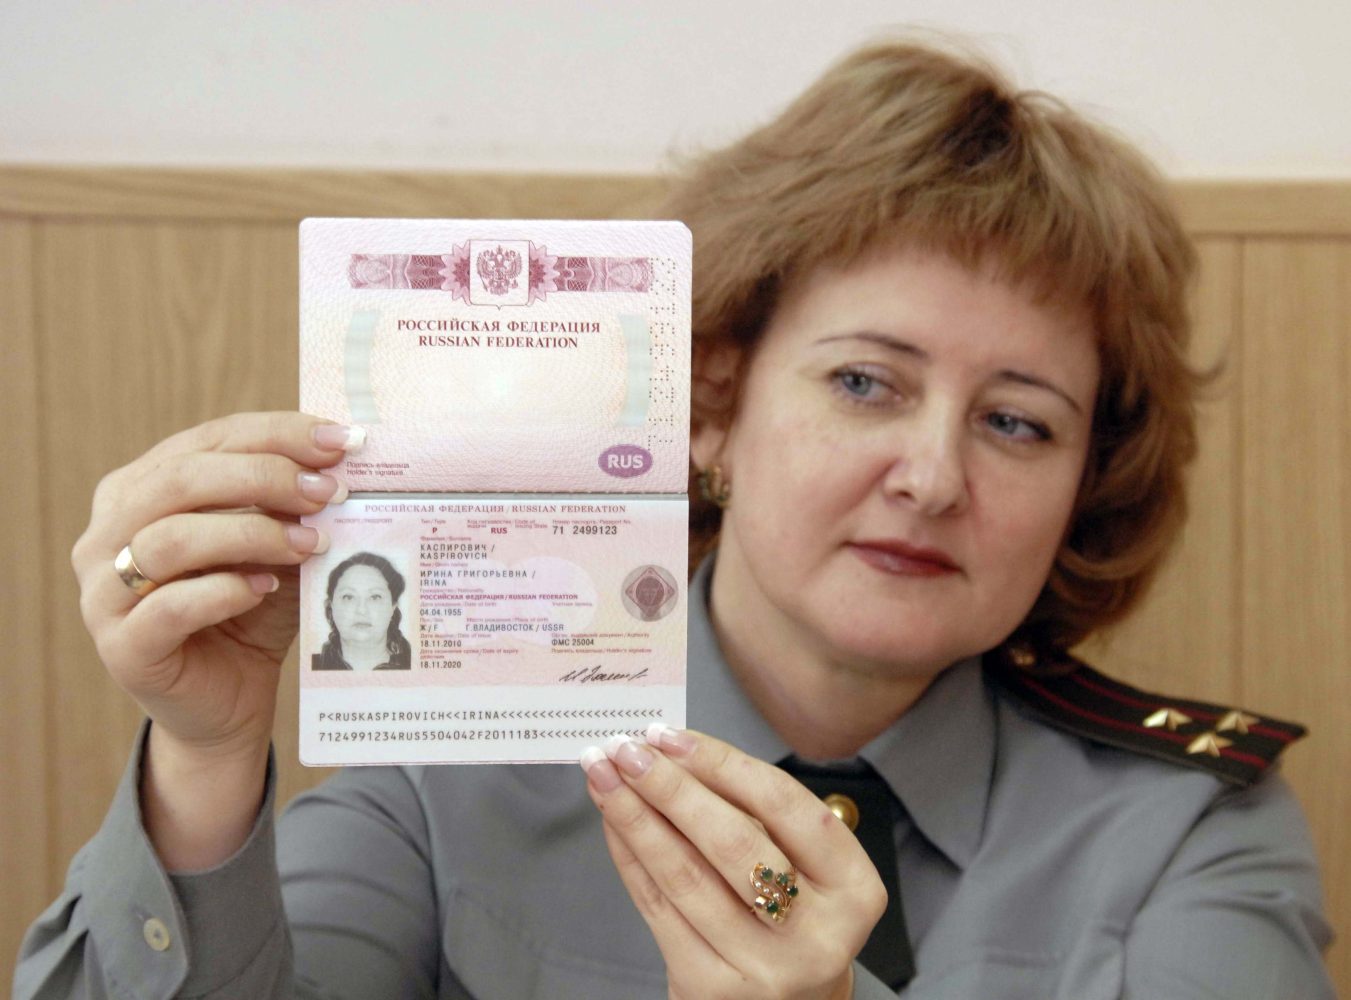 МИД Украины разрешил гражданам делать фото на документы в головных уборах